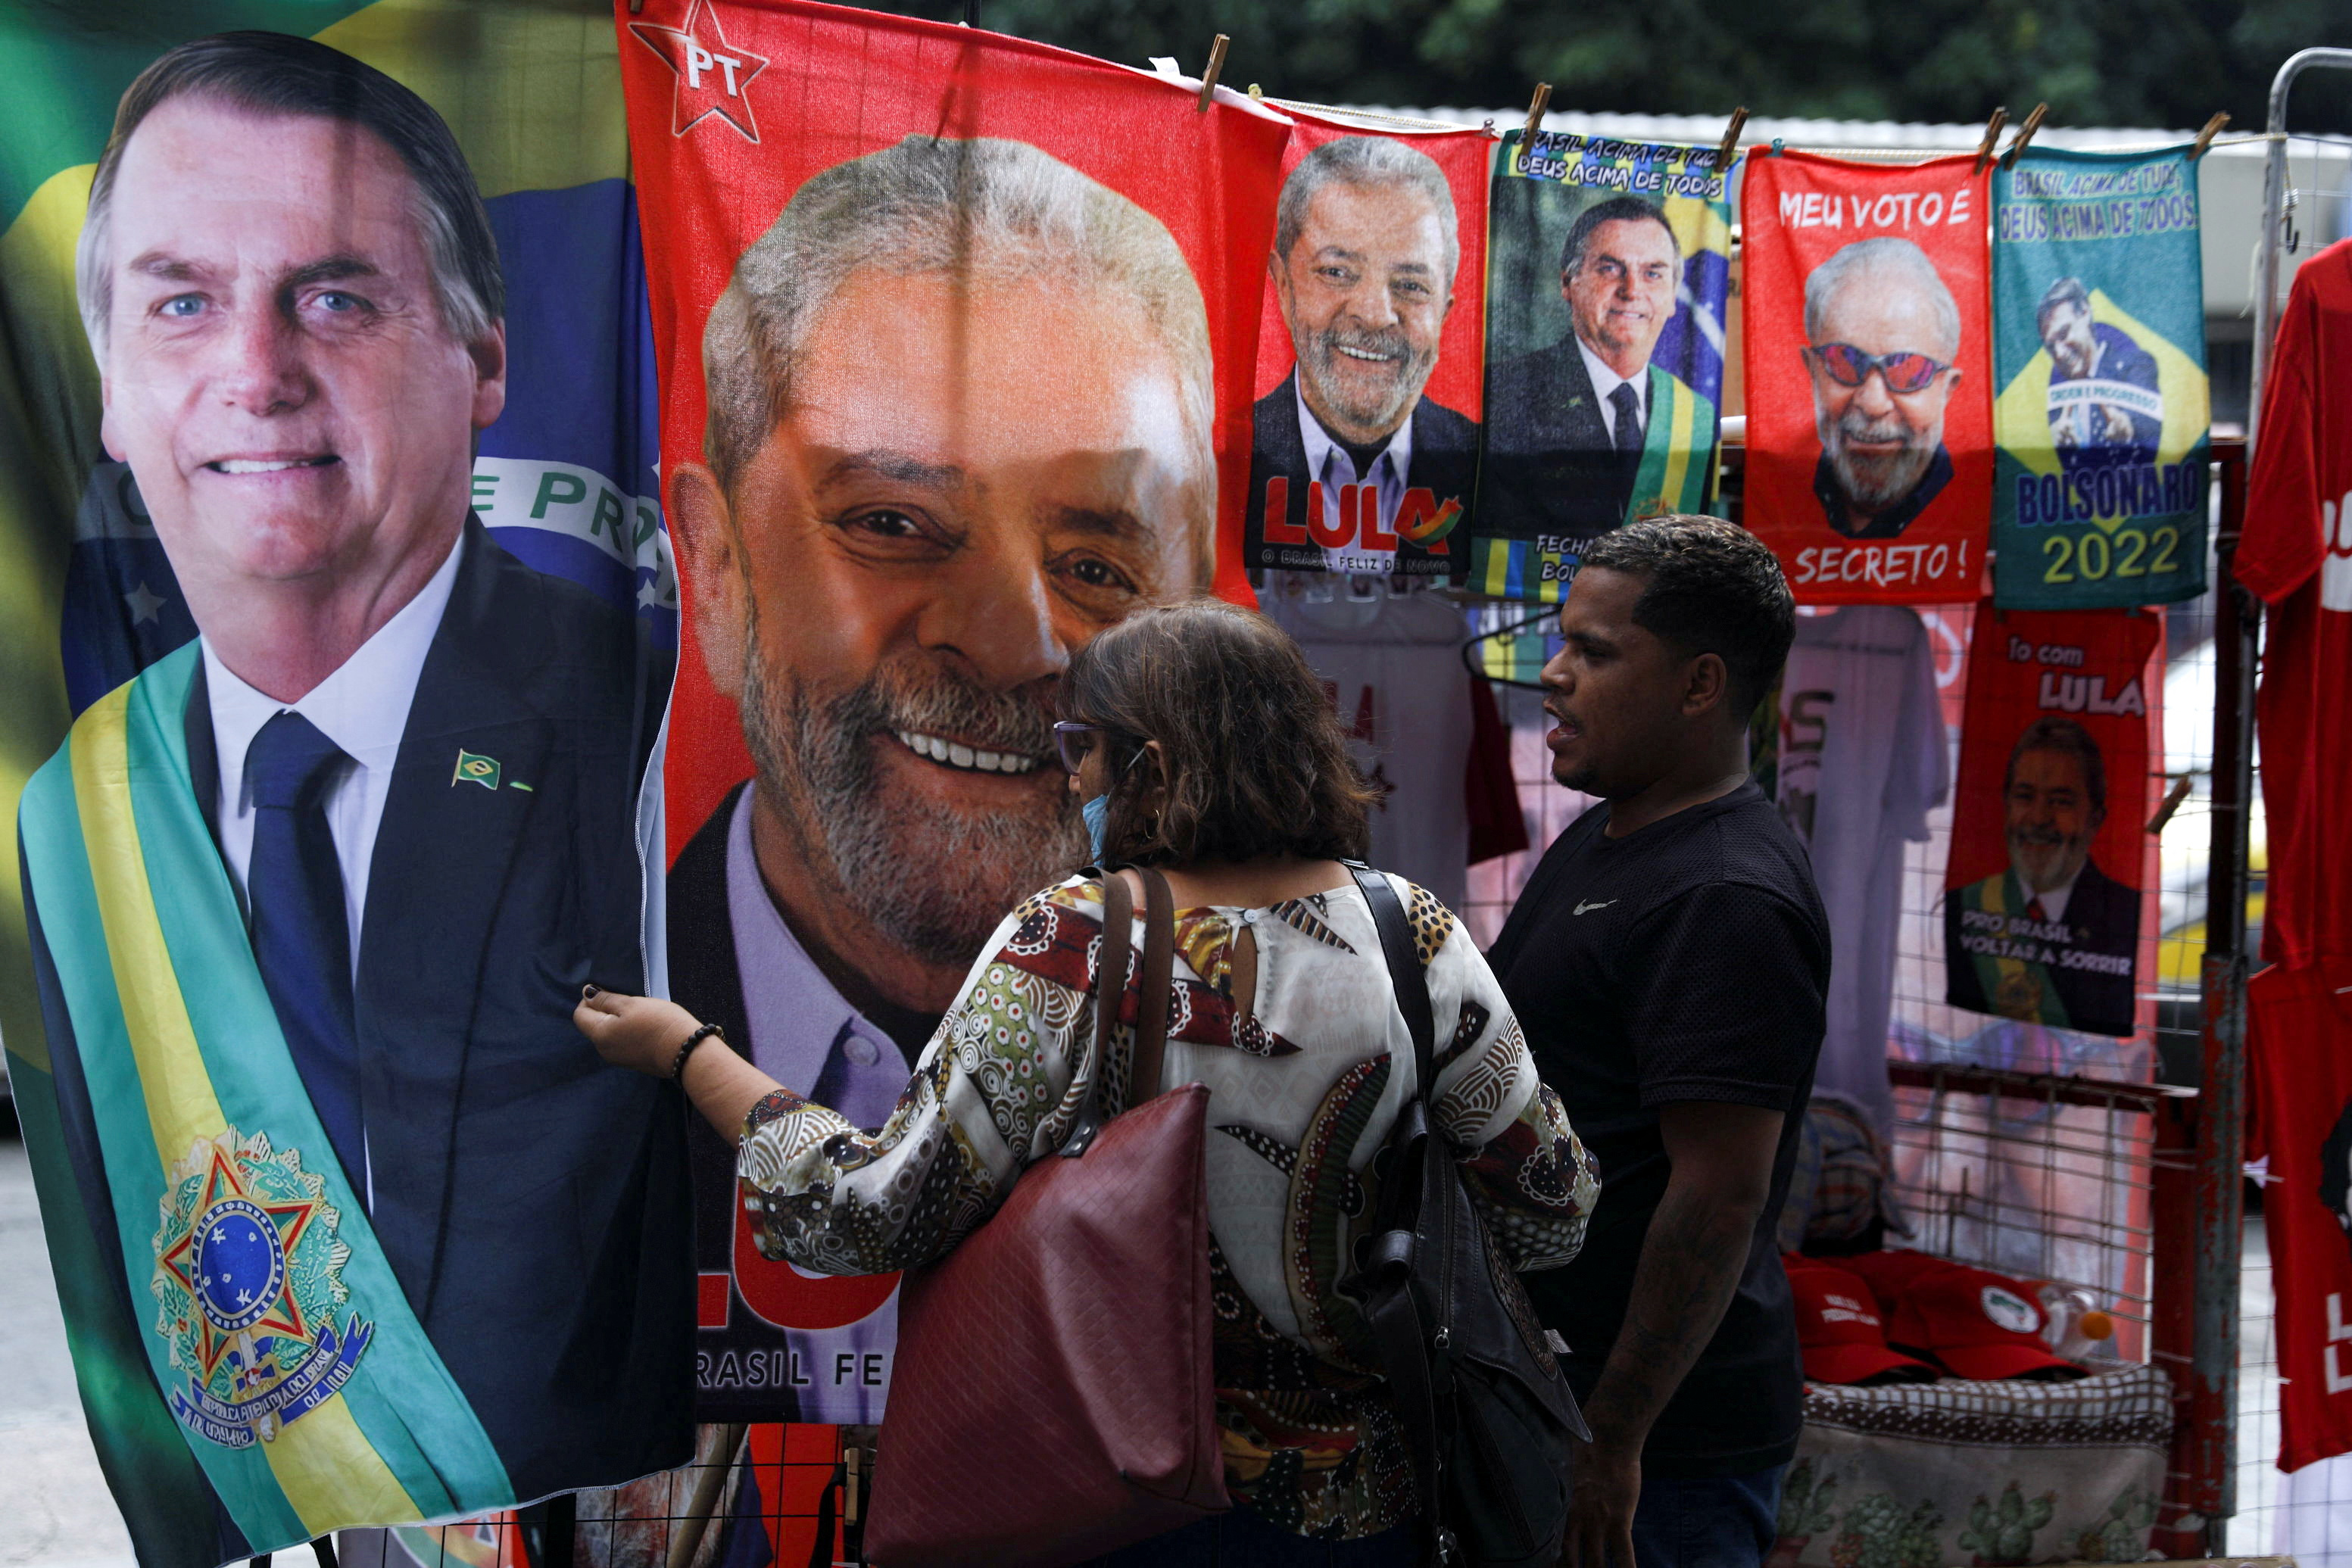 Jair Bolsonaro Y Lula Da Silva Inician La Campaña Más Polarizada De Brasil En Décadas 2022